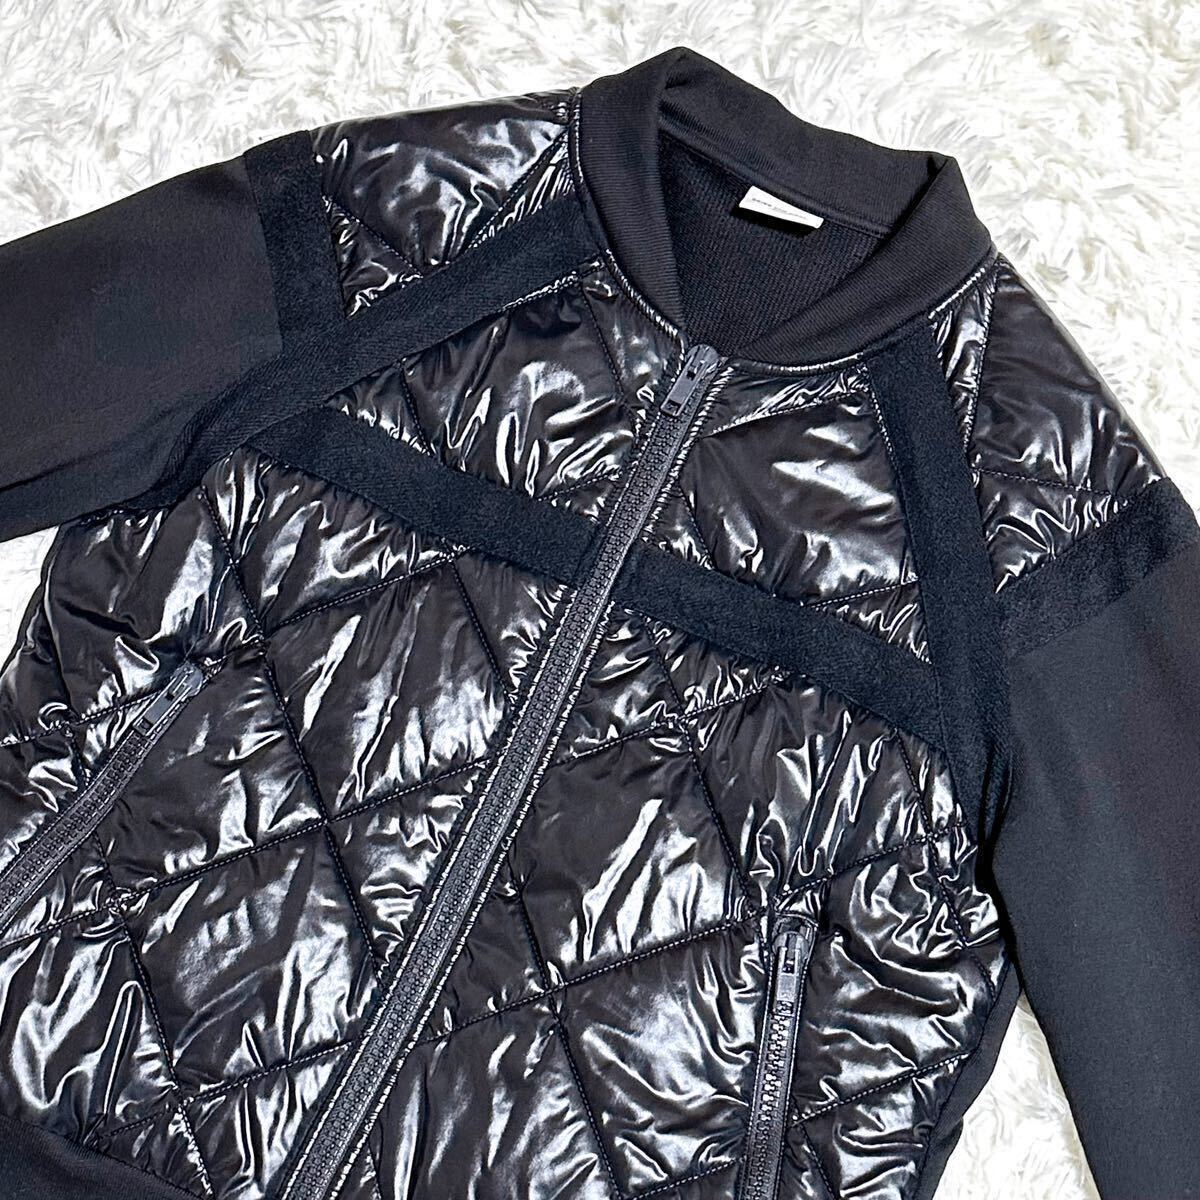 DRIES VAN NOTEN Dries Van Noten quilting jacket blouson switch combination do King sweat sweatshirt black M size 